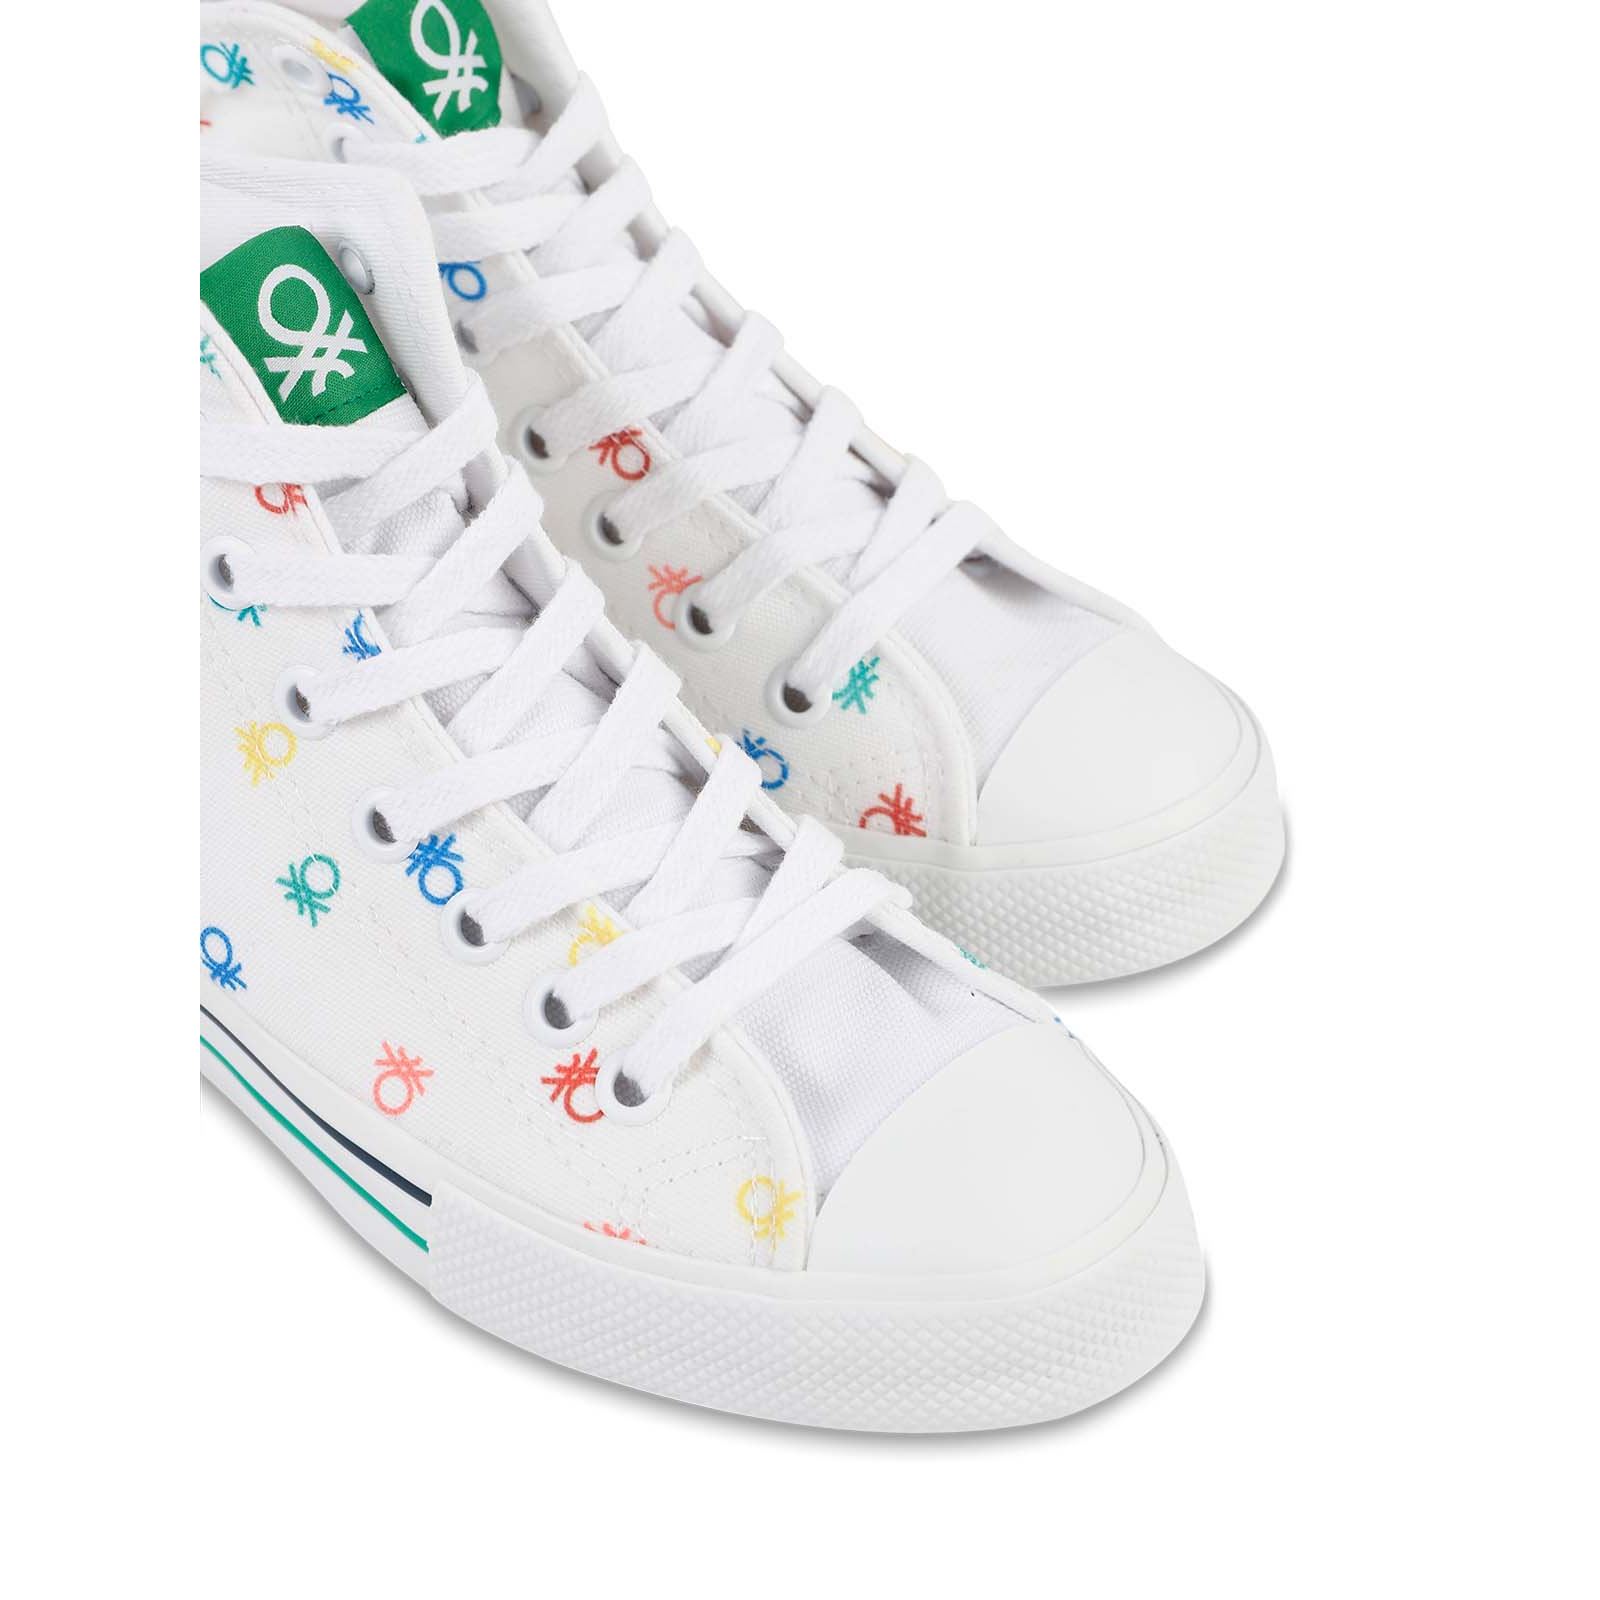 Benetton Kız Çocuk Spor Ayakkabı 36-40 Numara Beyaz